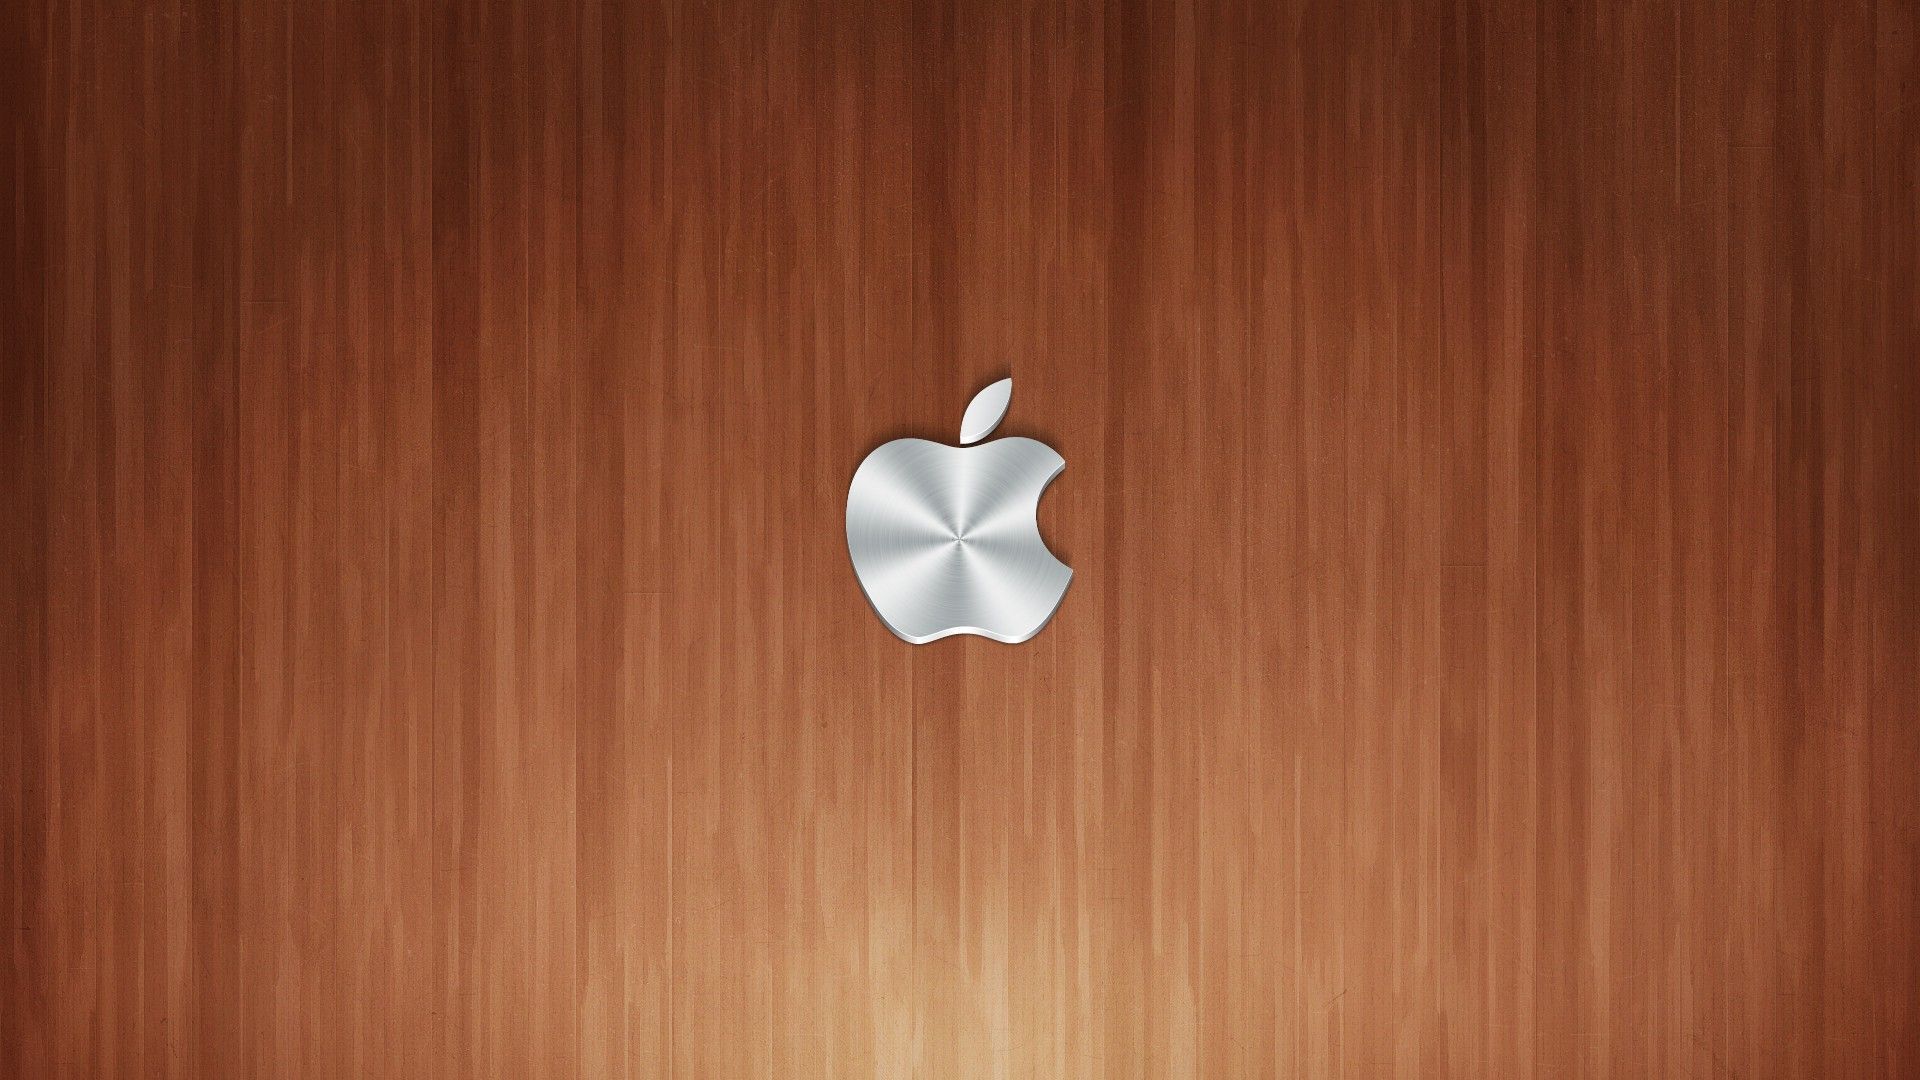 Apple Inc Logos Best Widescreen .wallpaper House.com